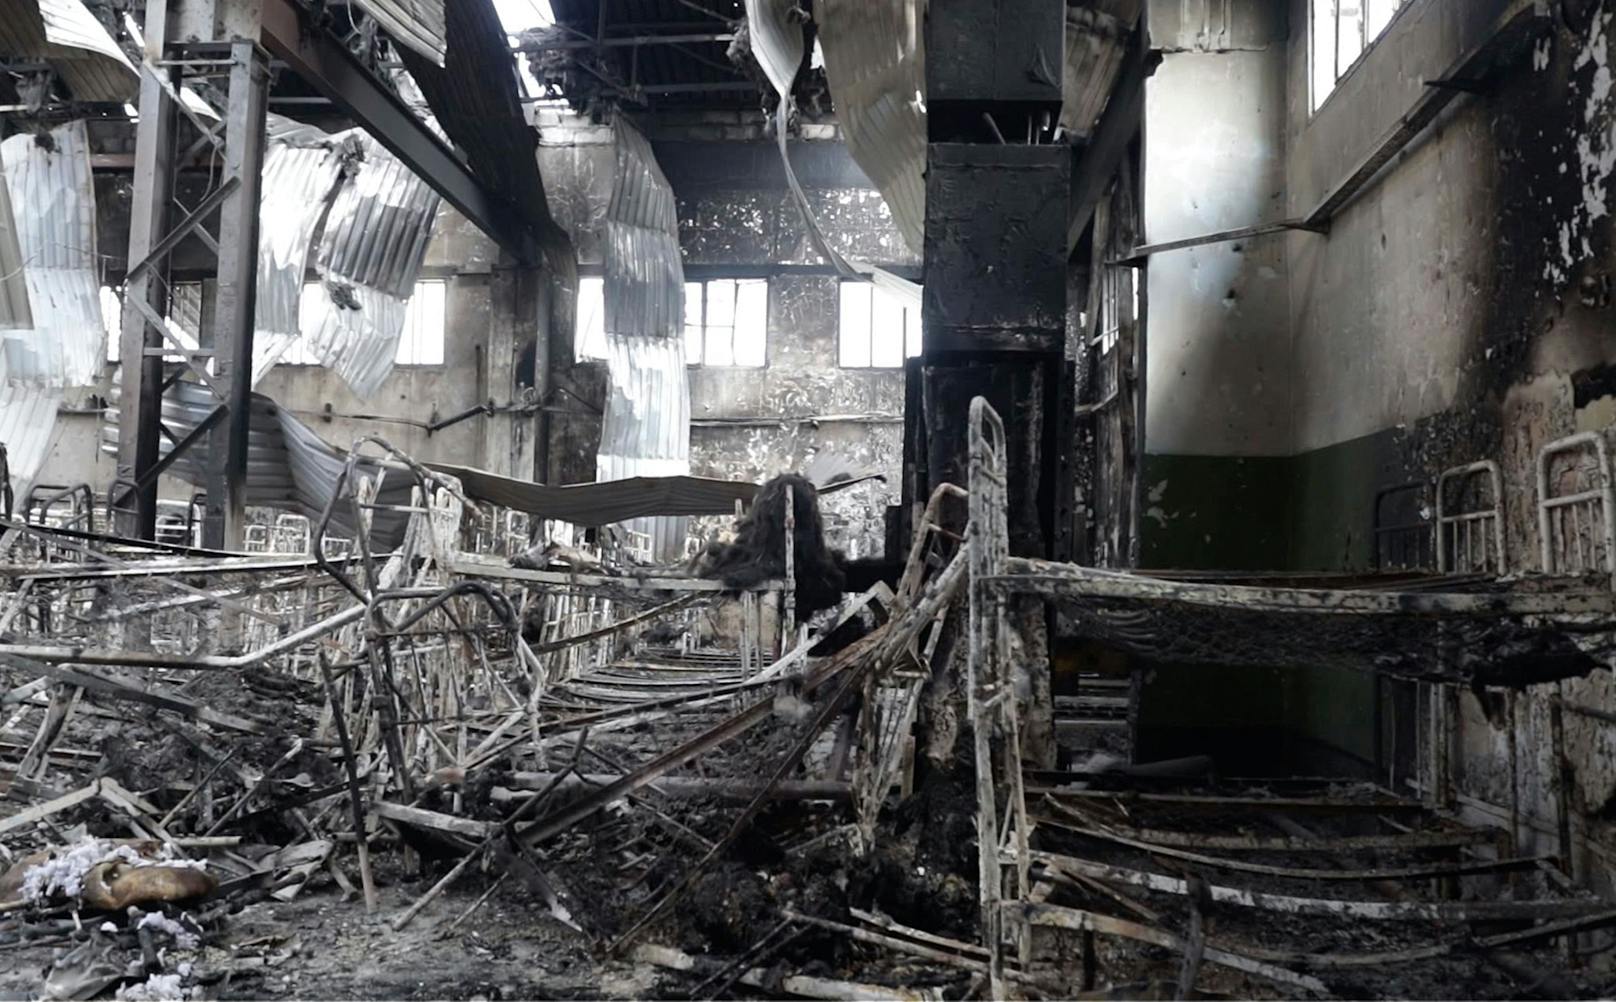 Am 29. Juli wurde das von Russland-freundlichen Separatisten kontrollierte Straflager Oleniwka im Oblast Doenzk durch Explosionen und Feuer zerstört.